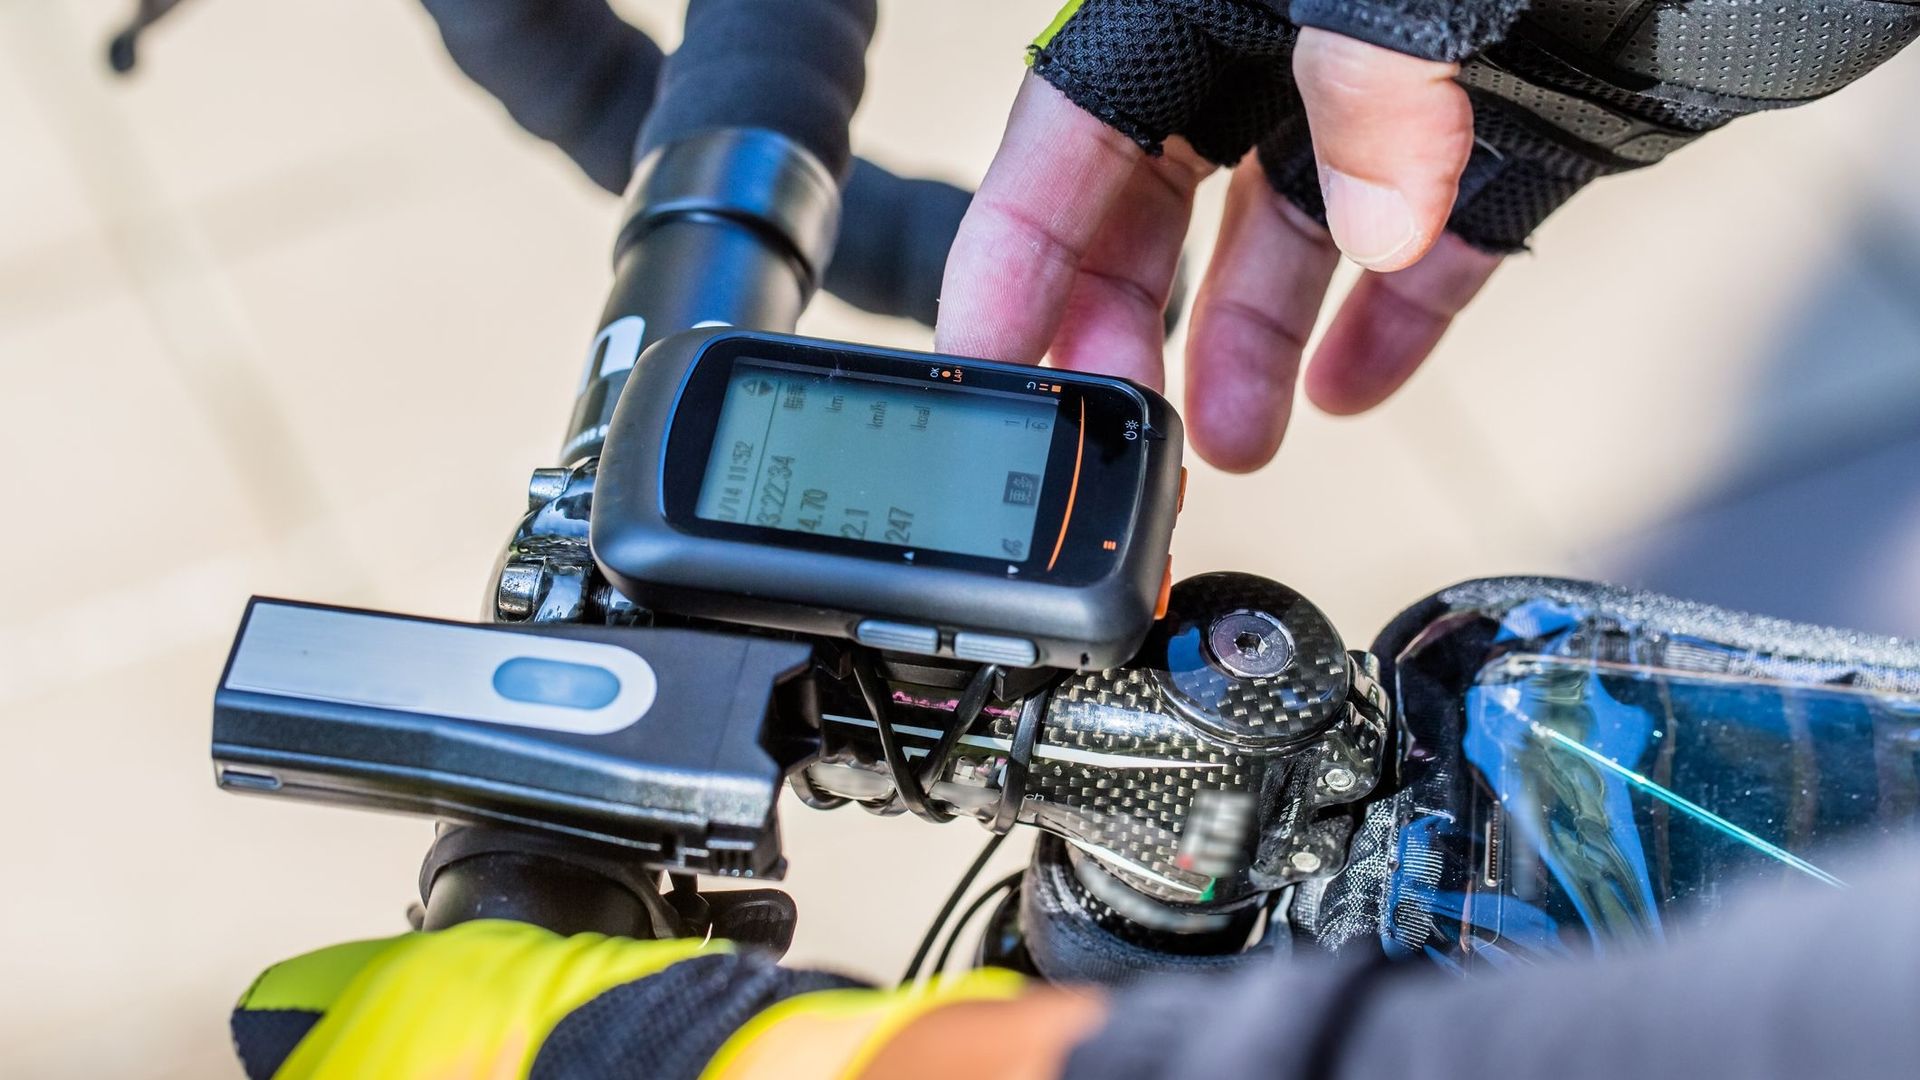 Comment choisir un bon traceur GPS pour son vélo ?